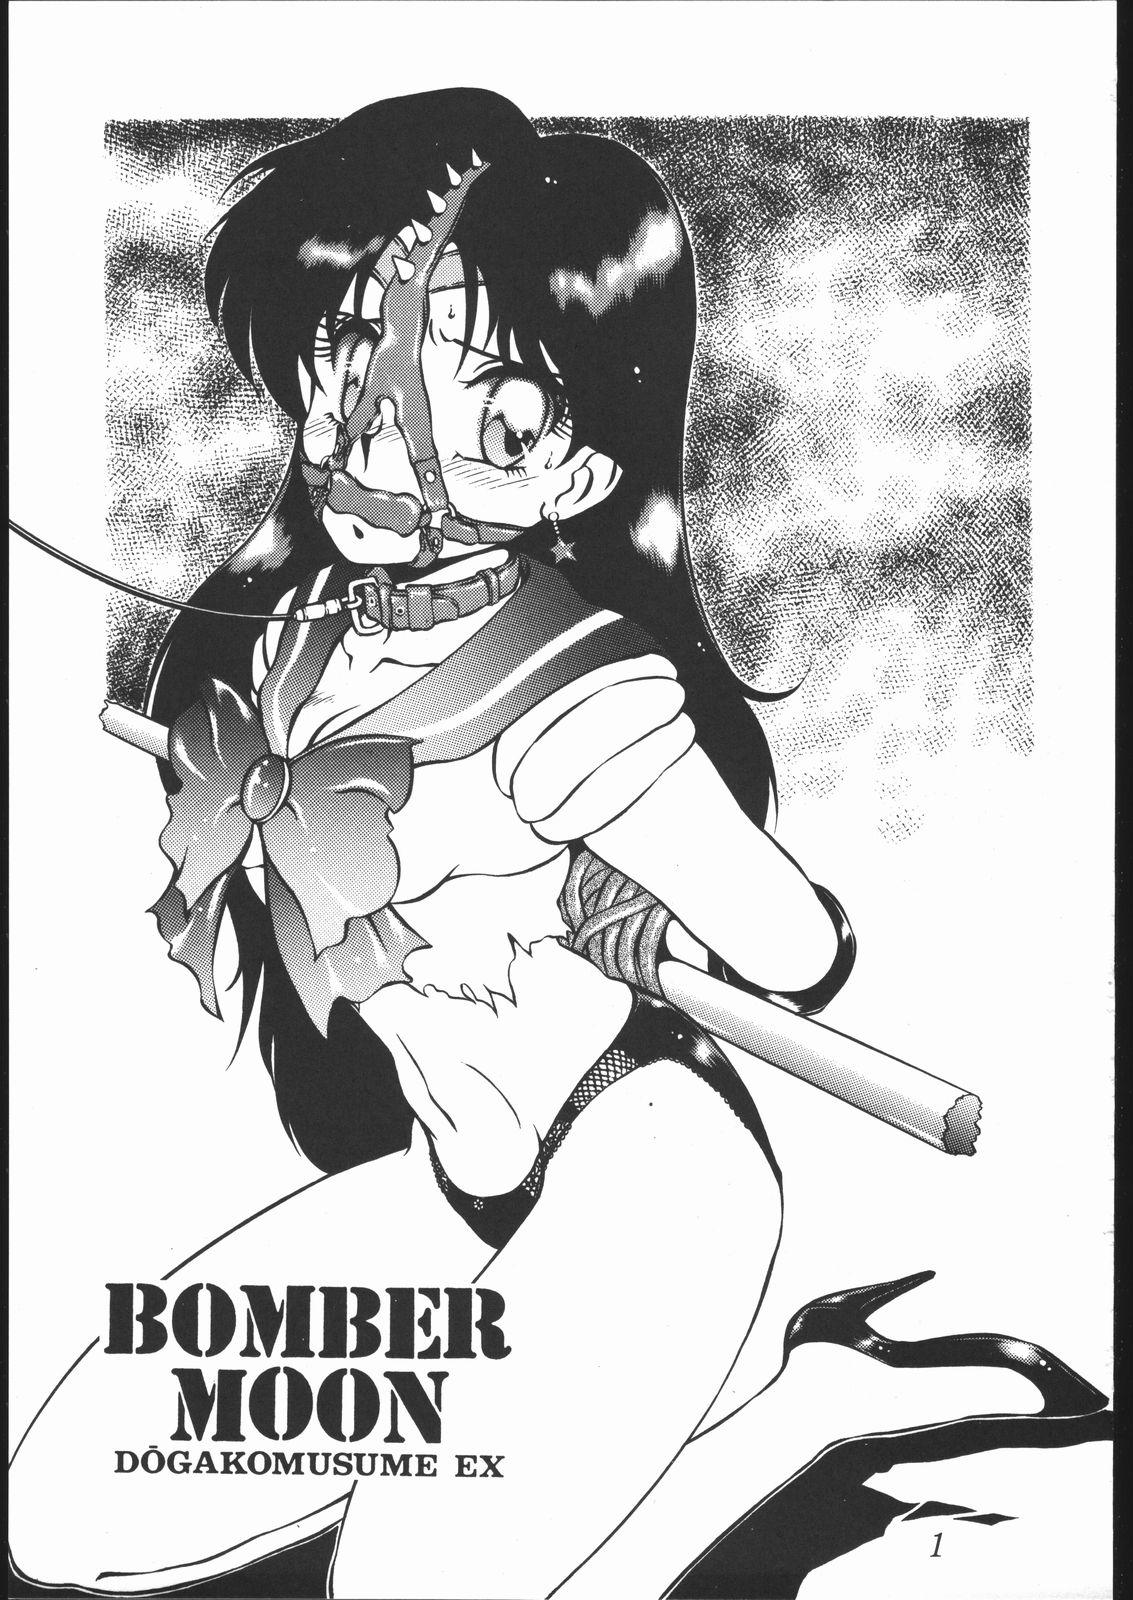 DOGAKOMUSUME EX BOMBER MOON 1